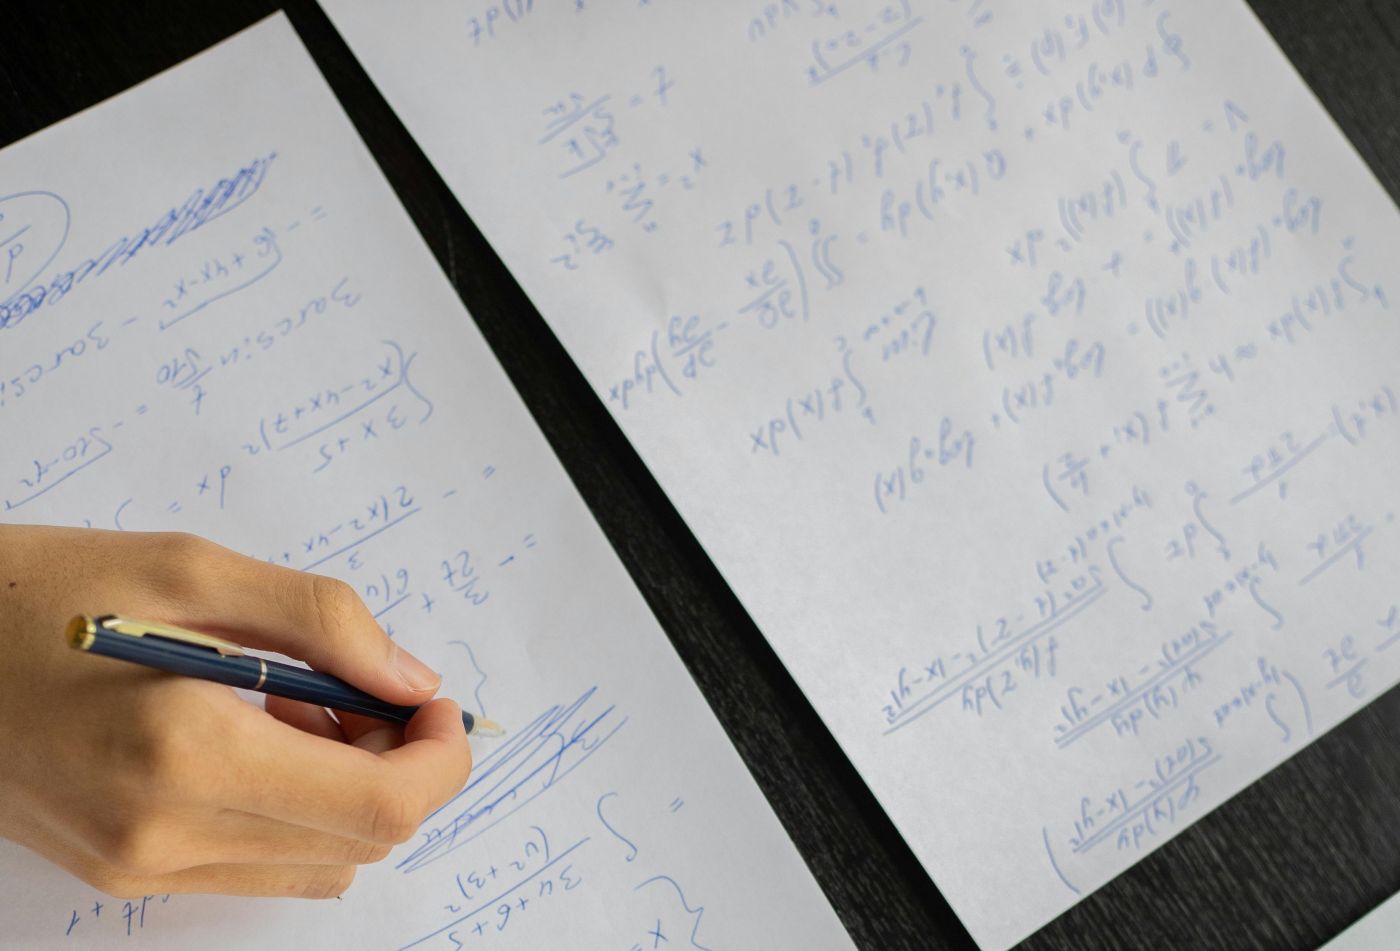 Dłoń z długopisem na kartkach z zapisami matematycznymi.